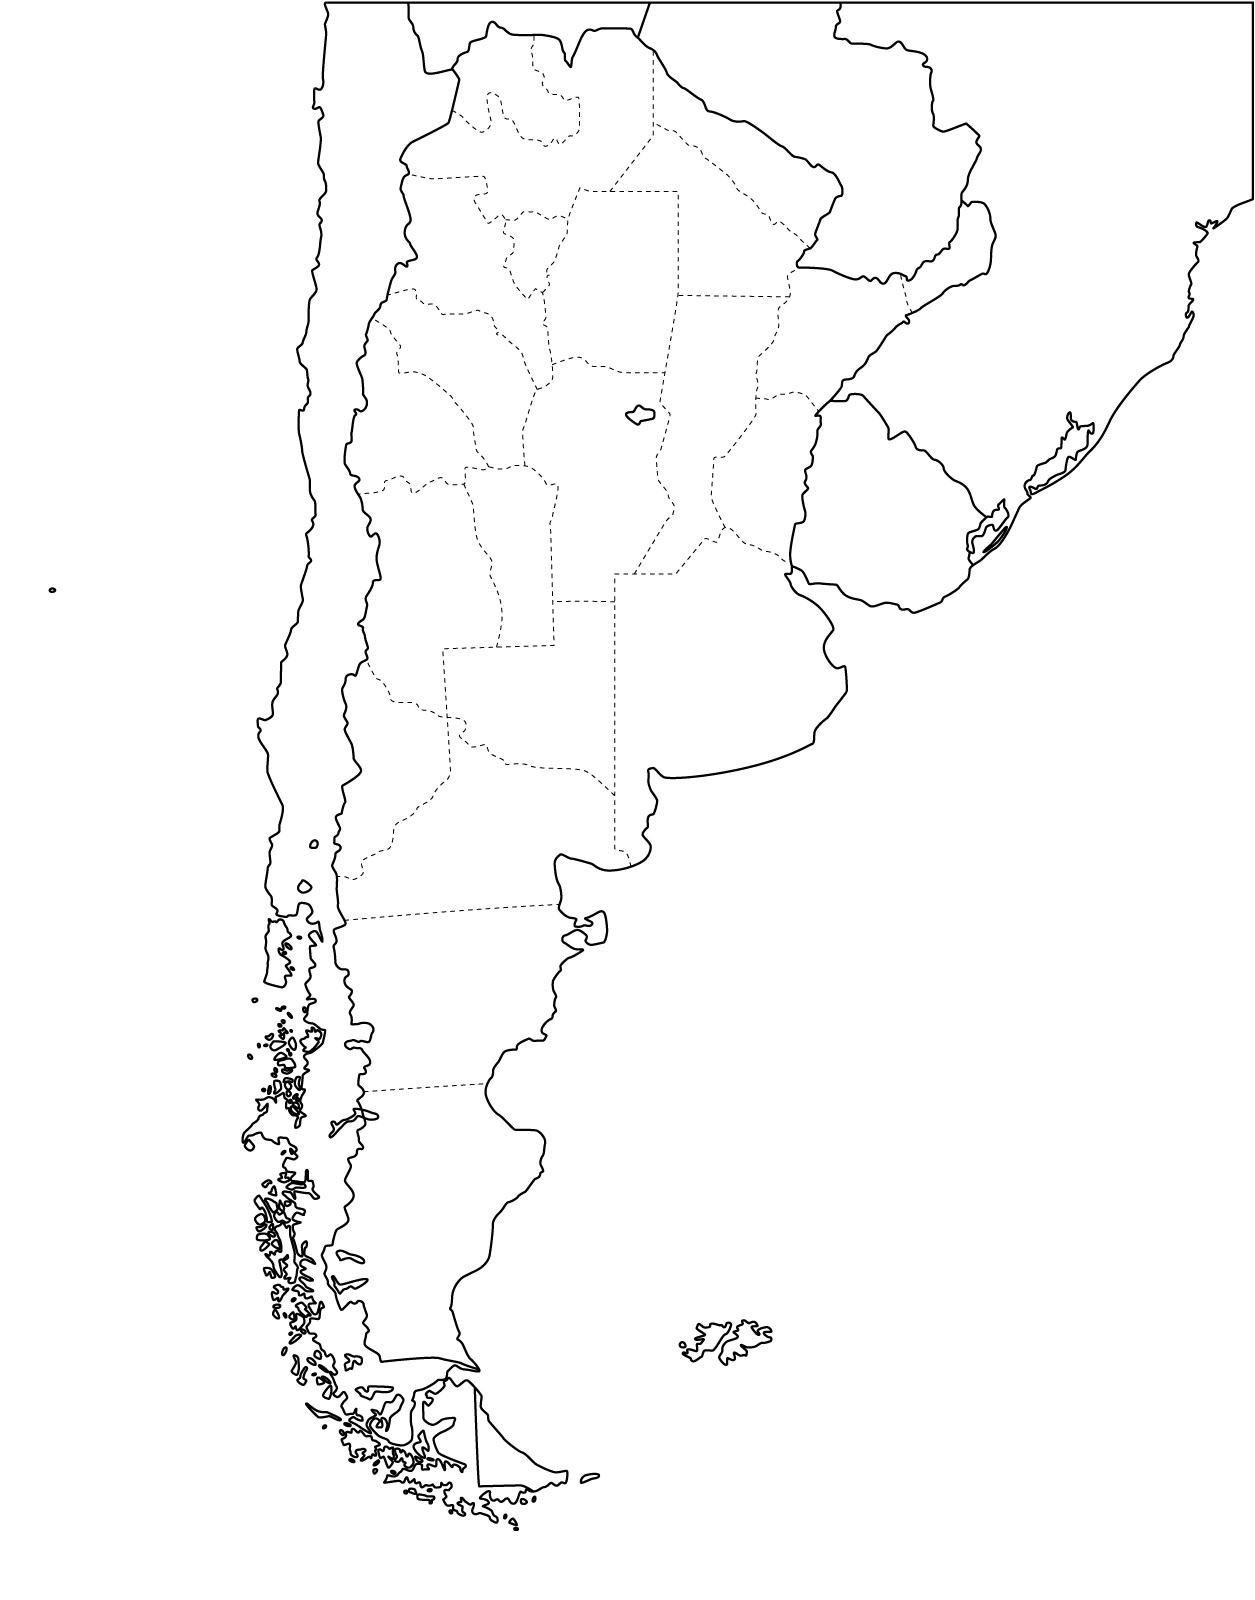 Mappa di Cile e Argentina